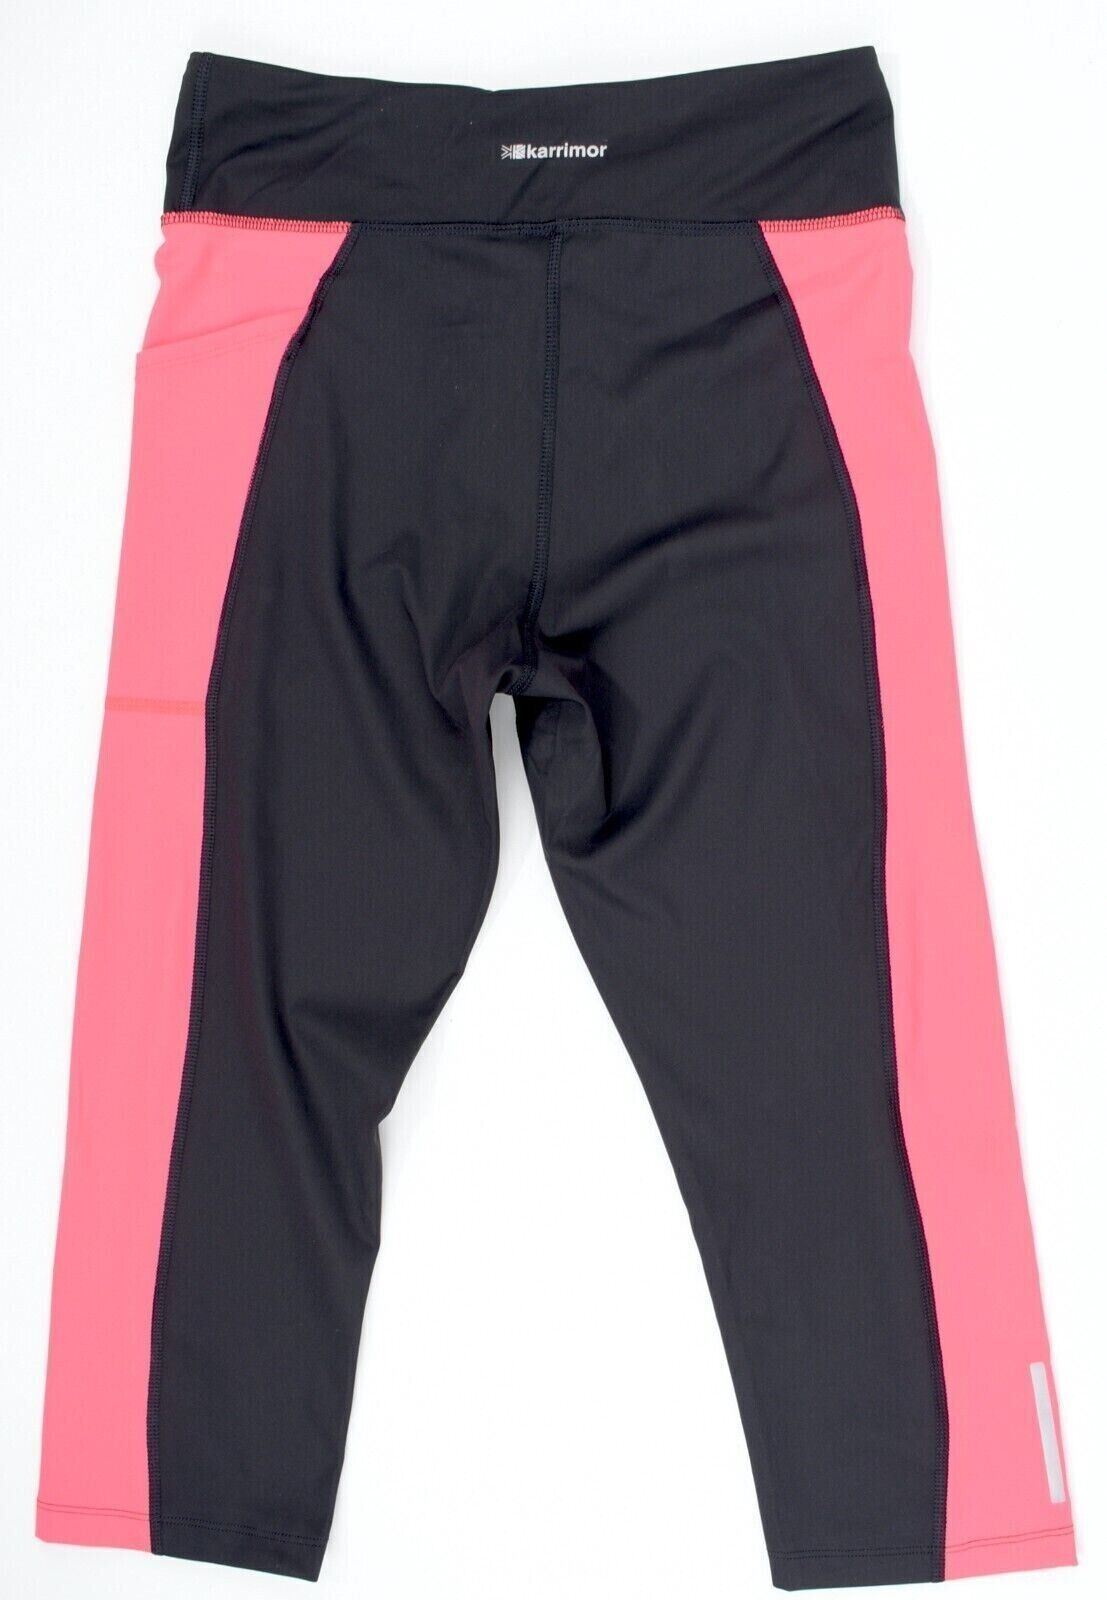 KARRIMOR Womens Running Capri Leggings, Black/Fluo Pink, size L /UK 14